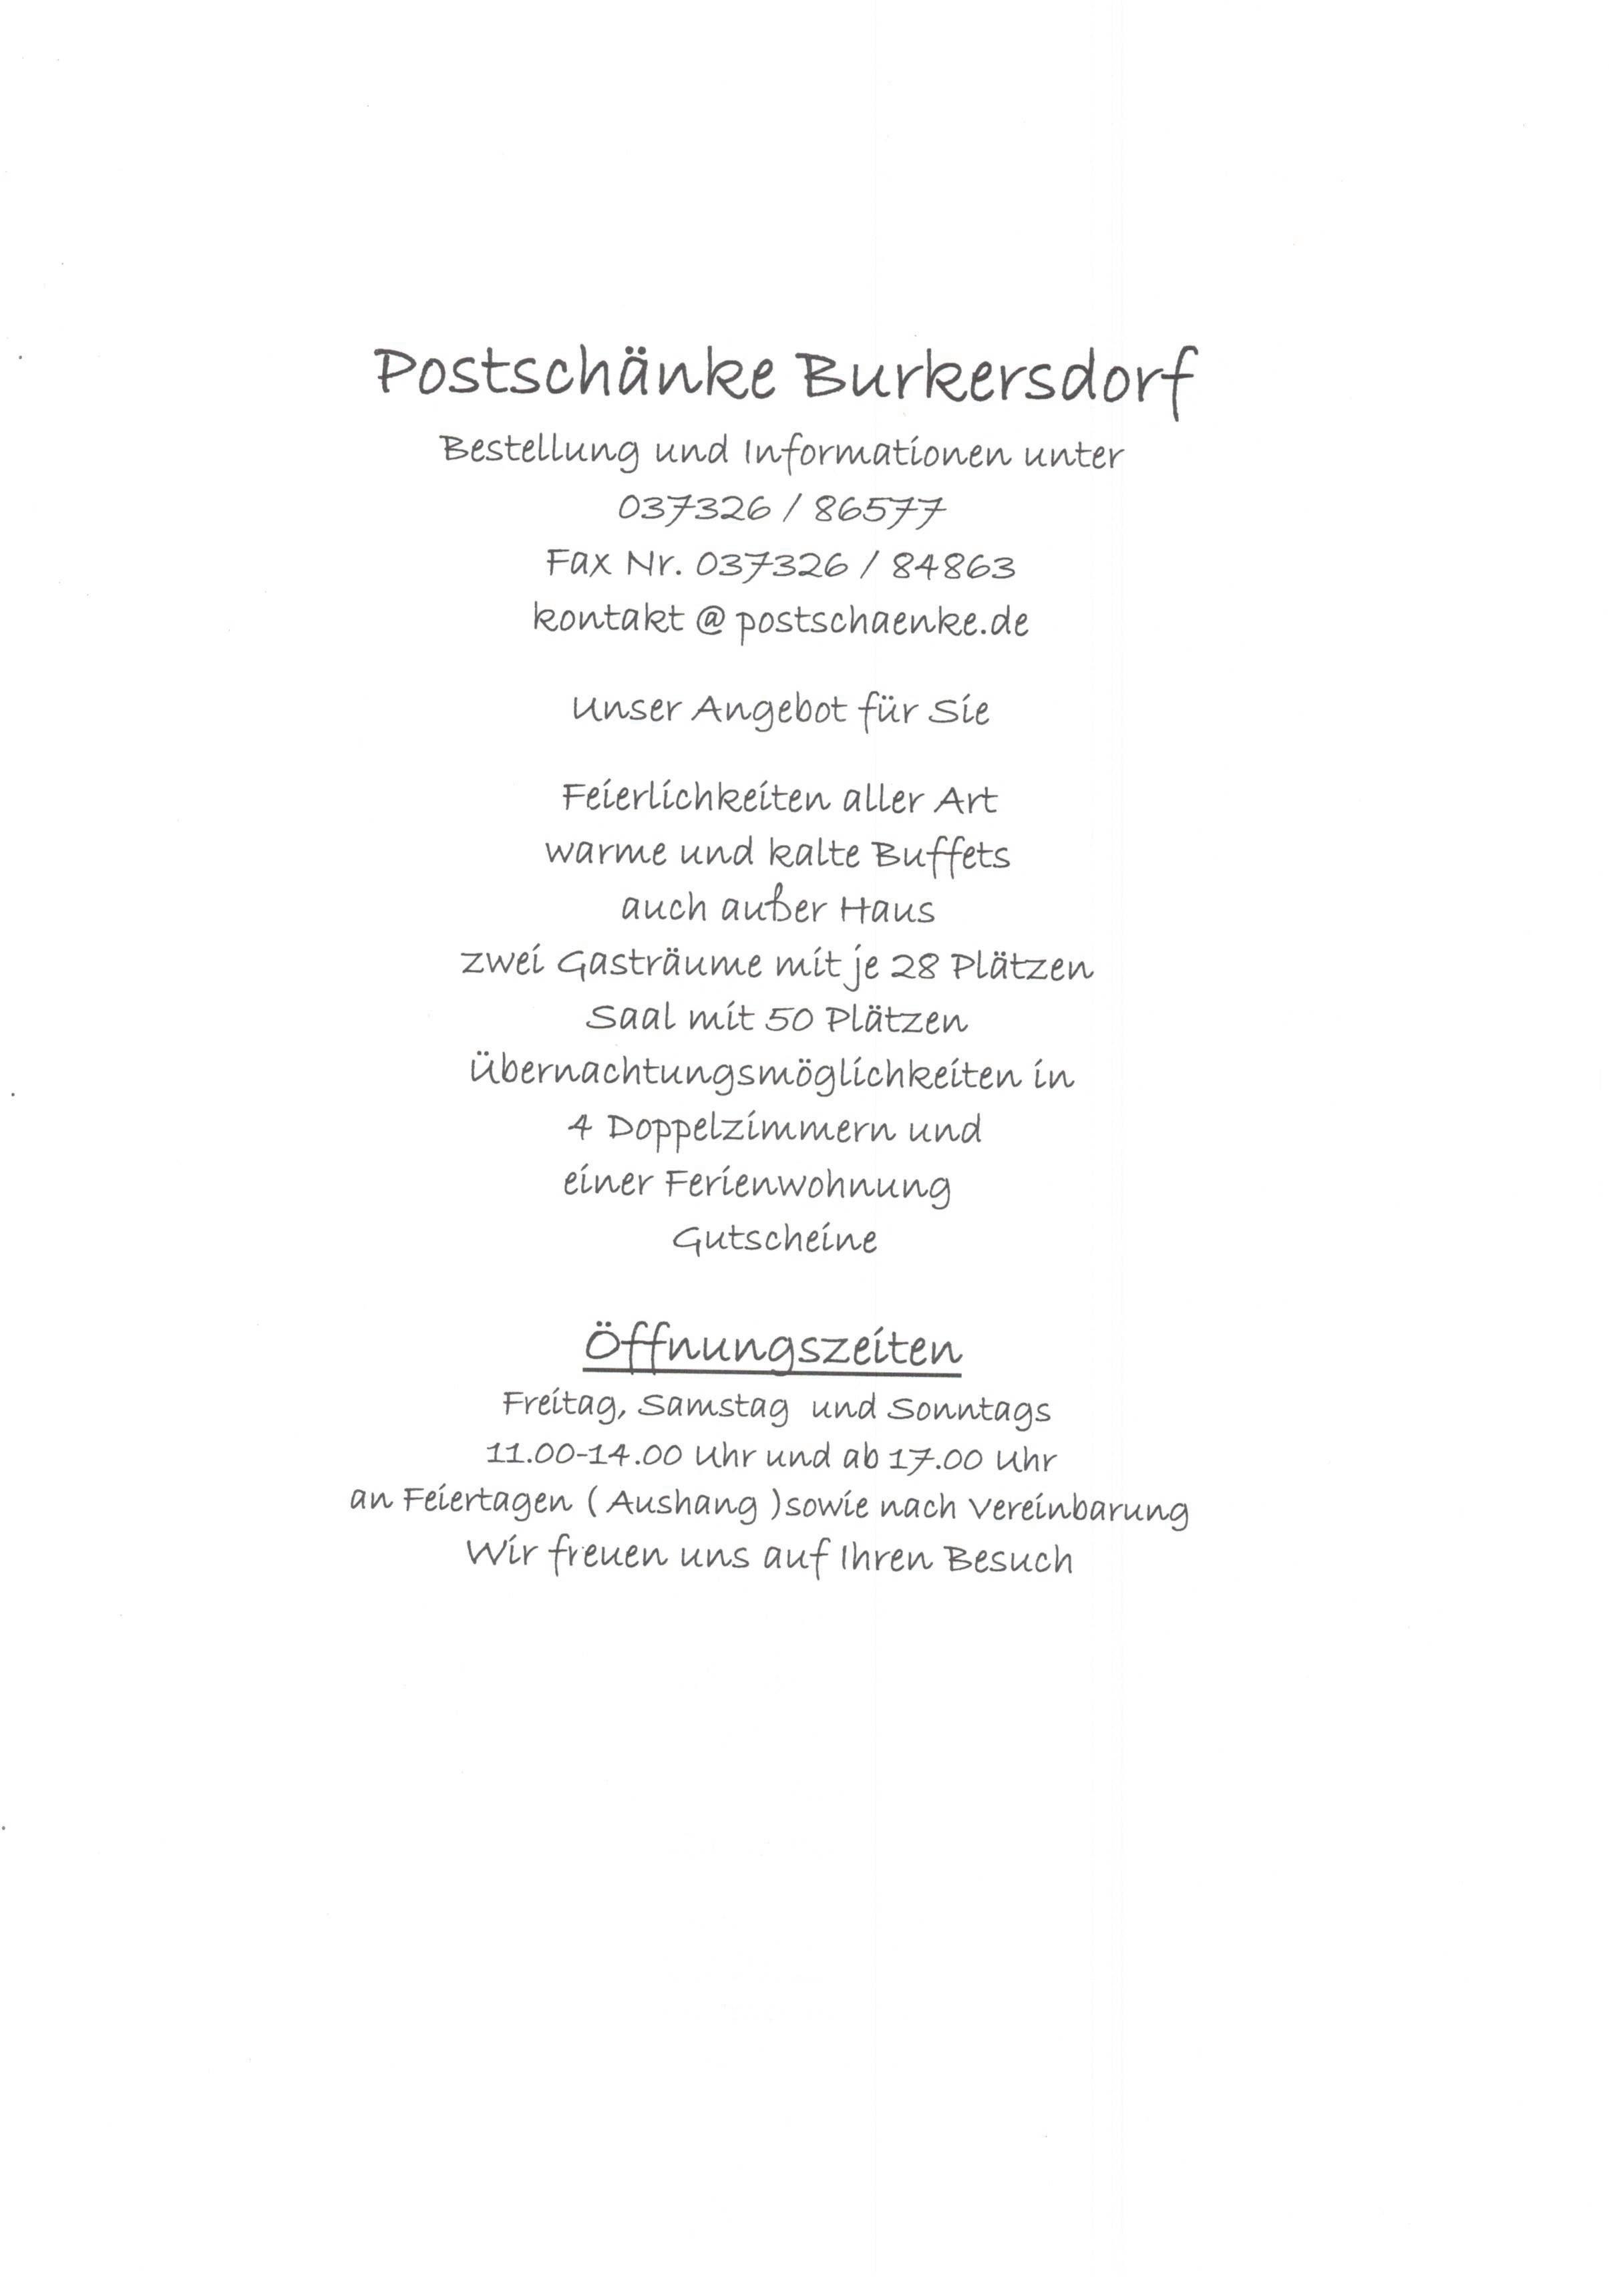 Bild 1 Postschänke Burkersdorf in Frauenstein